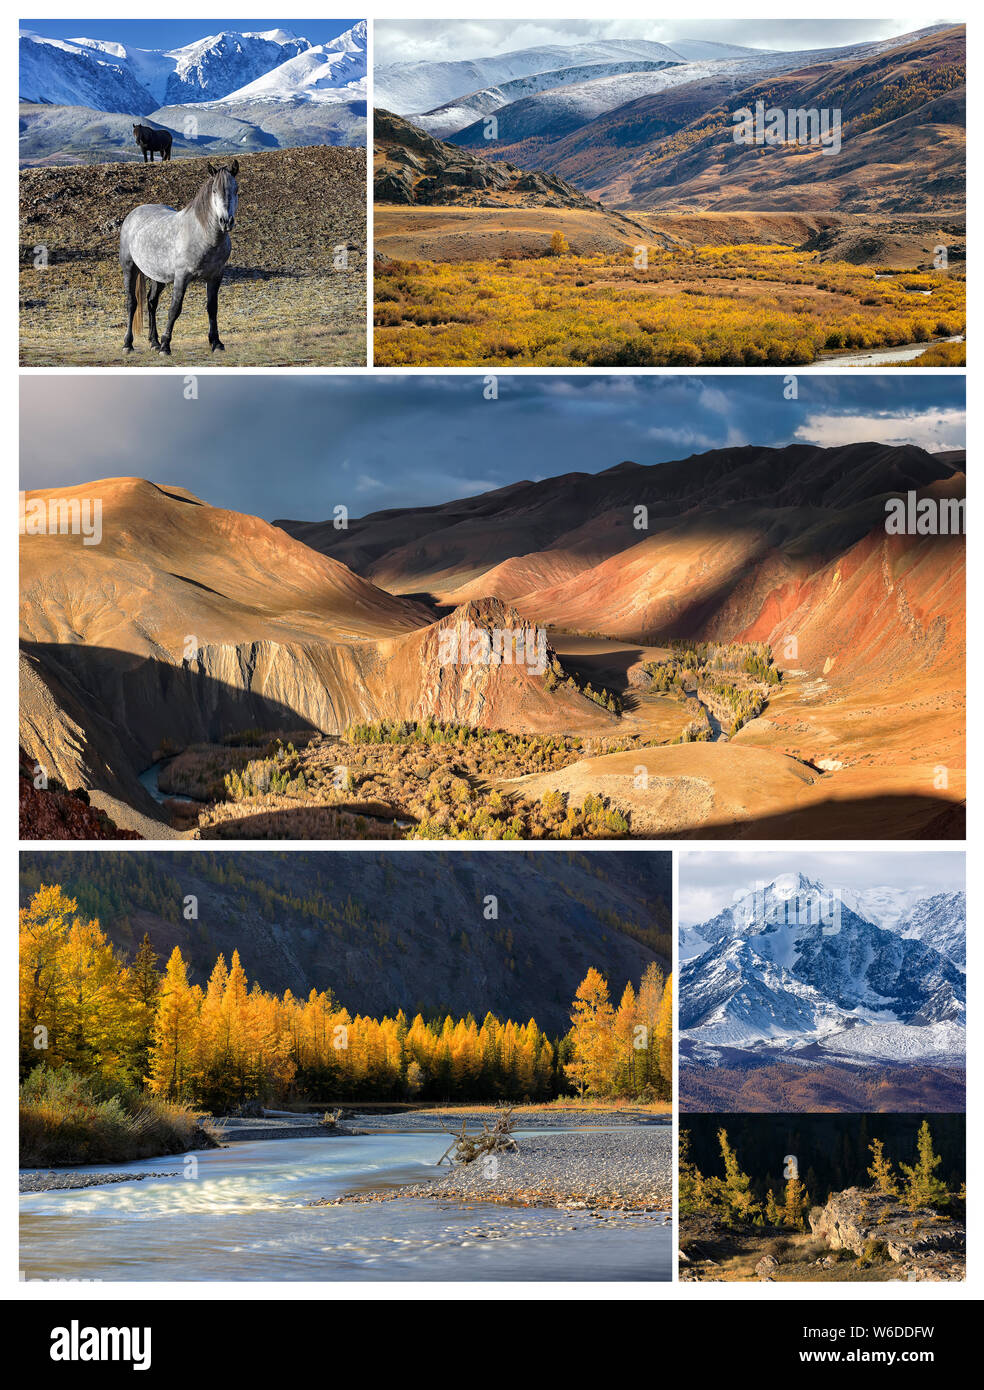 Collage de photos. Paysage d'automne avec l'or au nord de la crête de montagnes Chuya, vallée de Kyzylshin rivière et montagnes de l'Altaï, les chevaux sauvages et de la forêt Banque D'Images